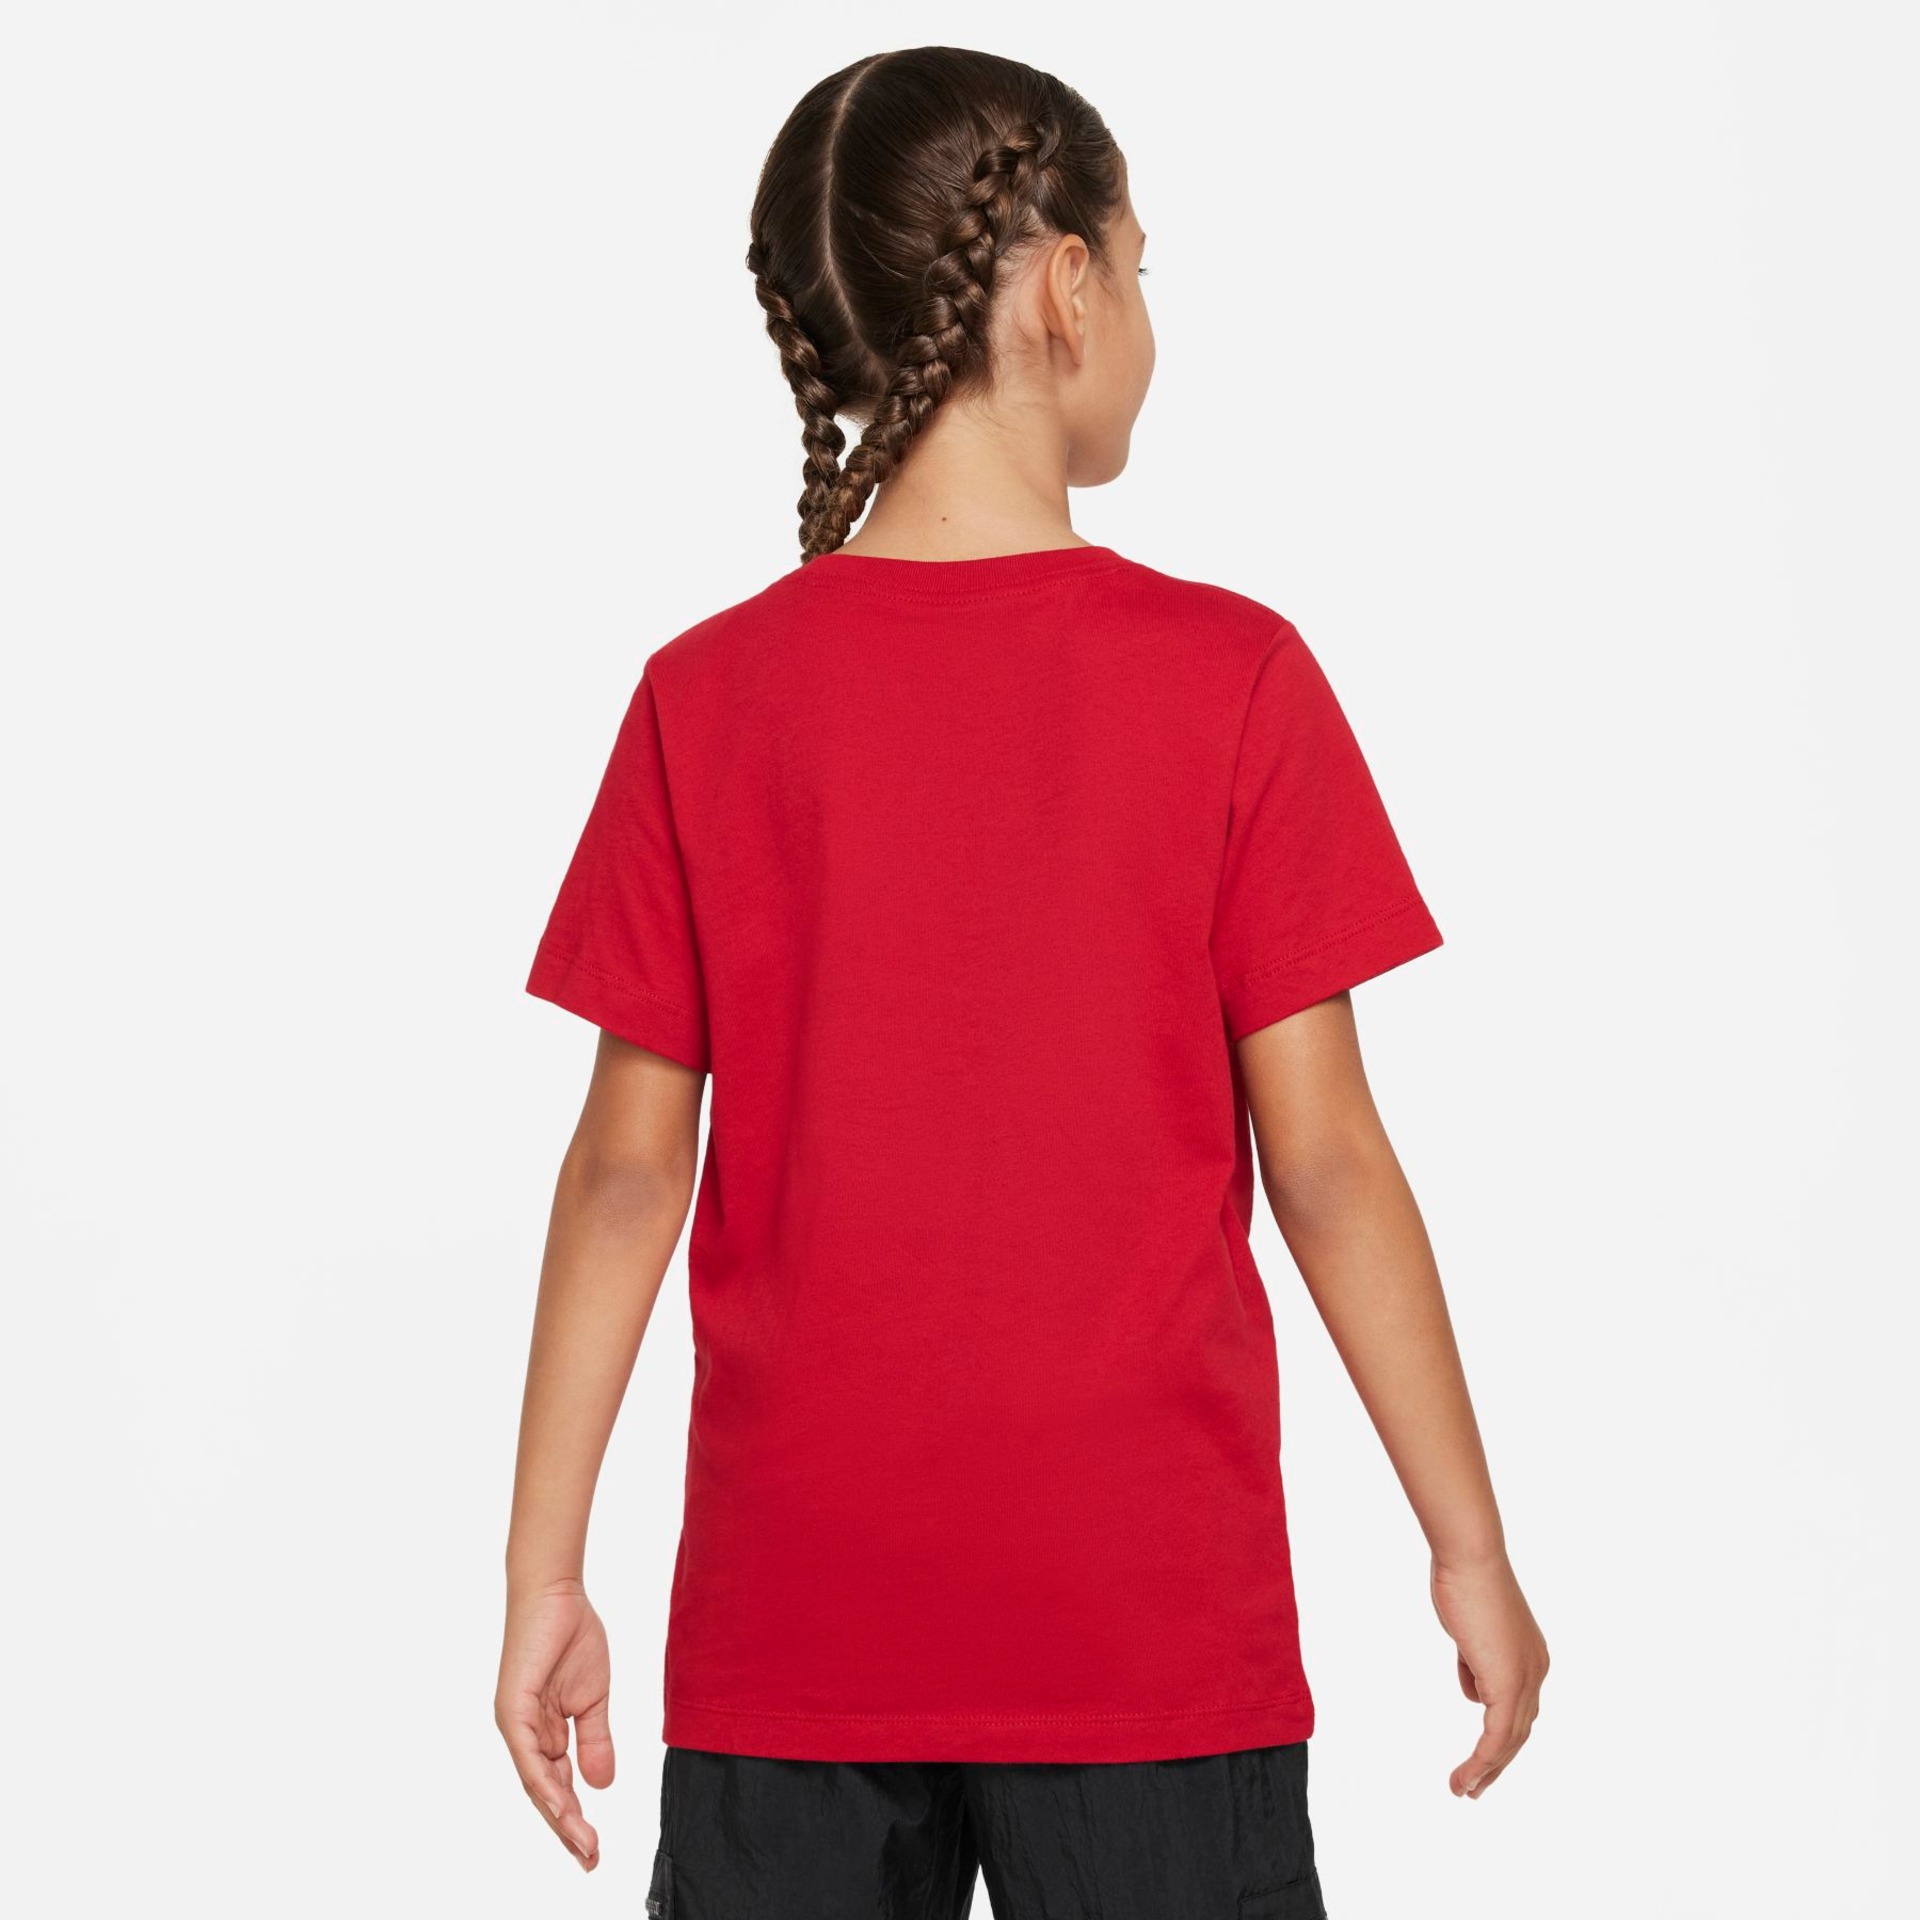 Camiseta Nike Liverpool Crest Infantil - Foto 2